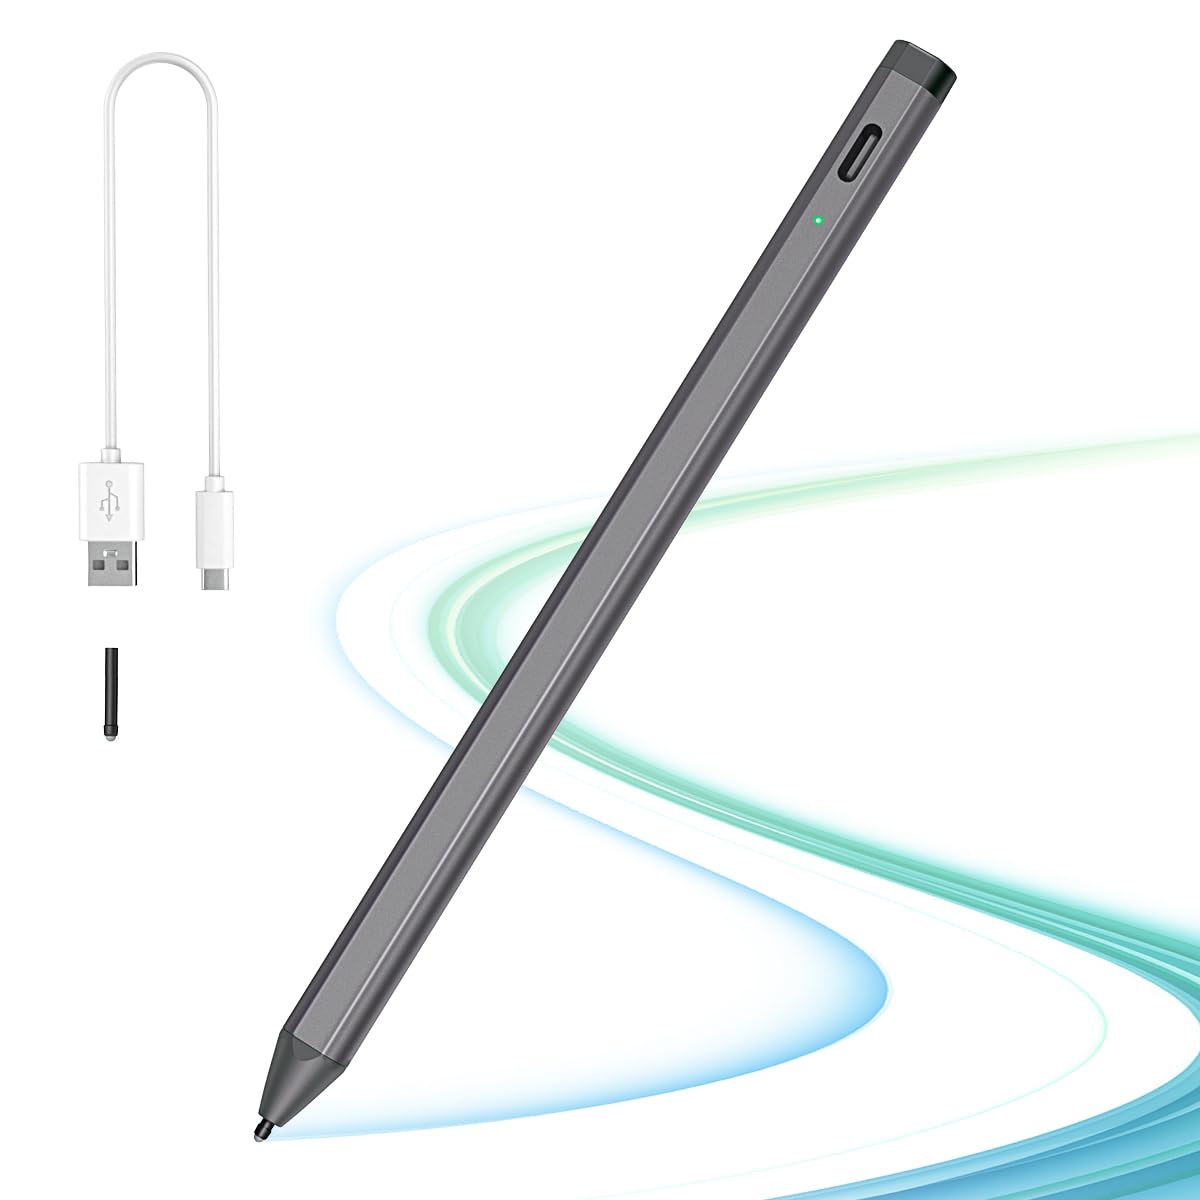 TiMOVO USI Stift für Chromebook, USI 2.0 Stylus Pen Eingabestift für Amazon Fire Max 11, Fire HD 10 13. Gen 2023, Lenovo IdeaPad Duet/Yoga, ASUS Flip Chromebook Stift mit Schnellladung 4096 Steuerung